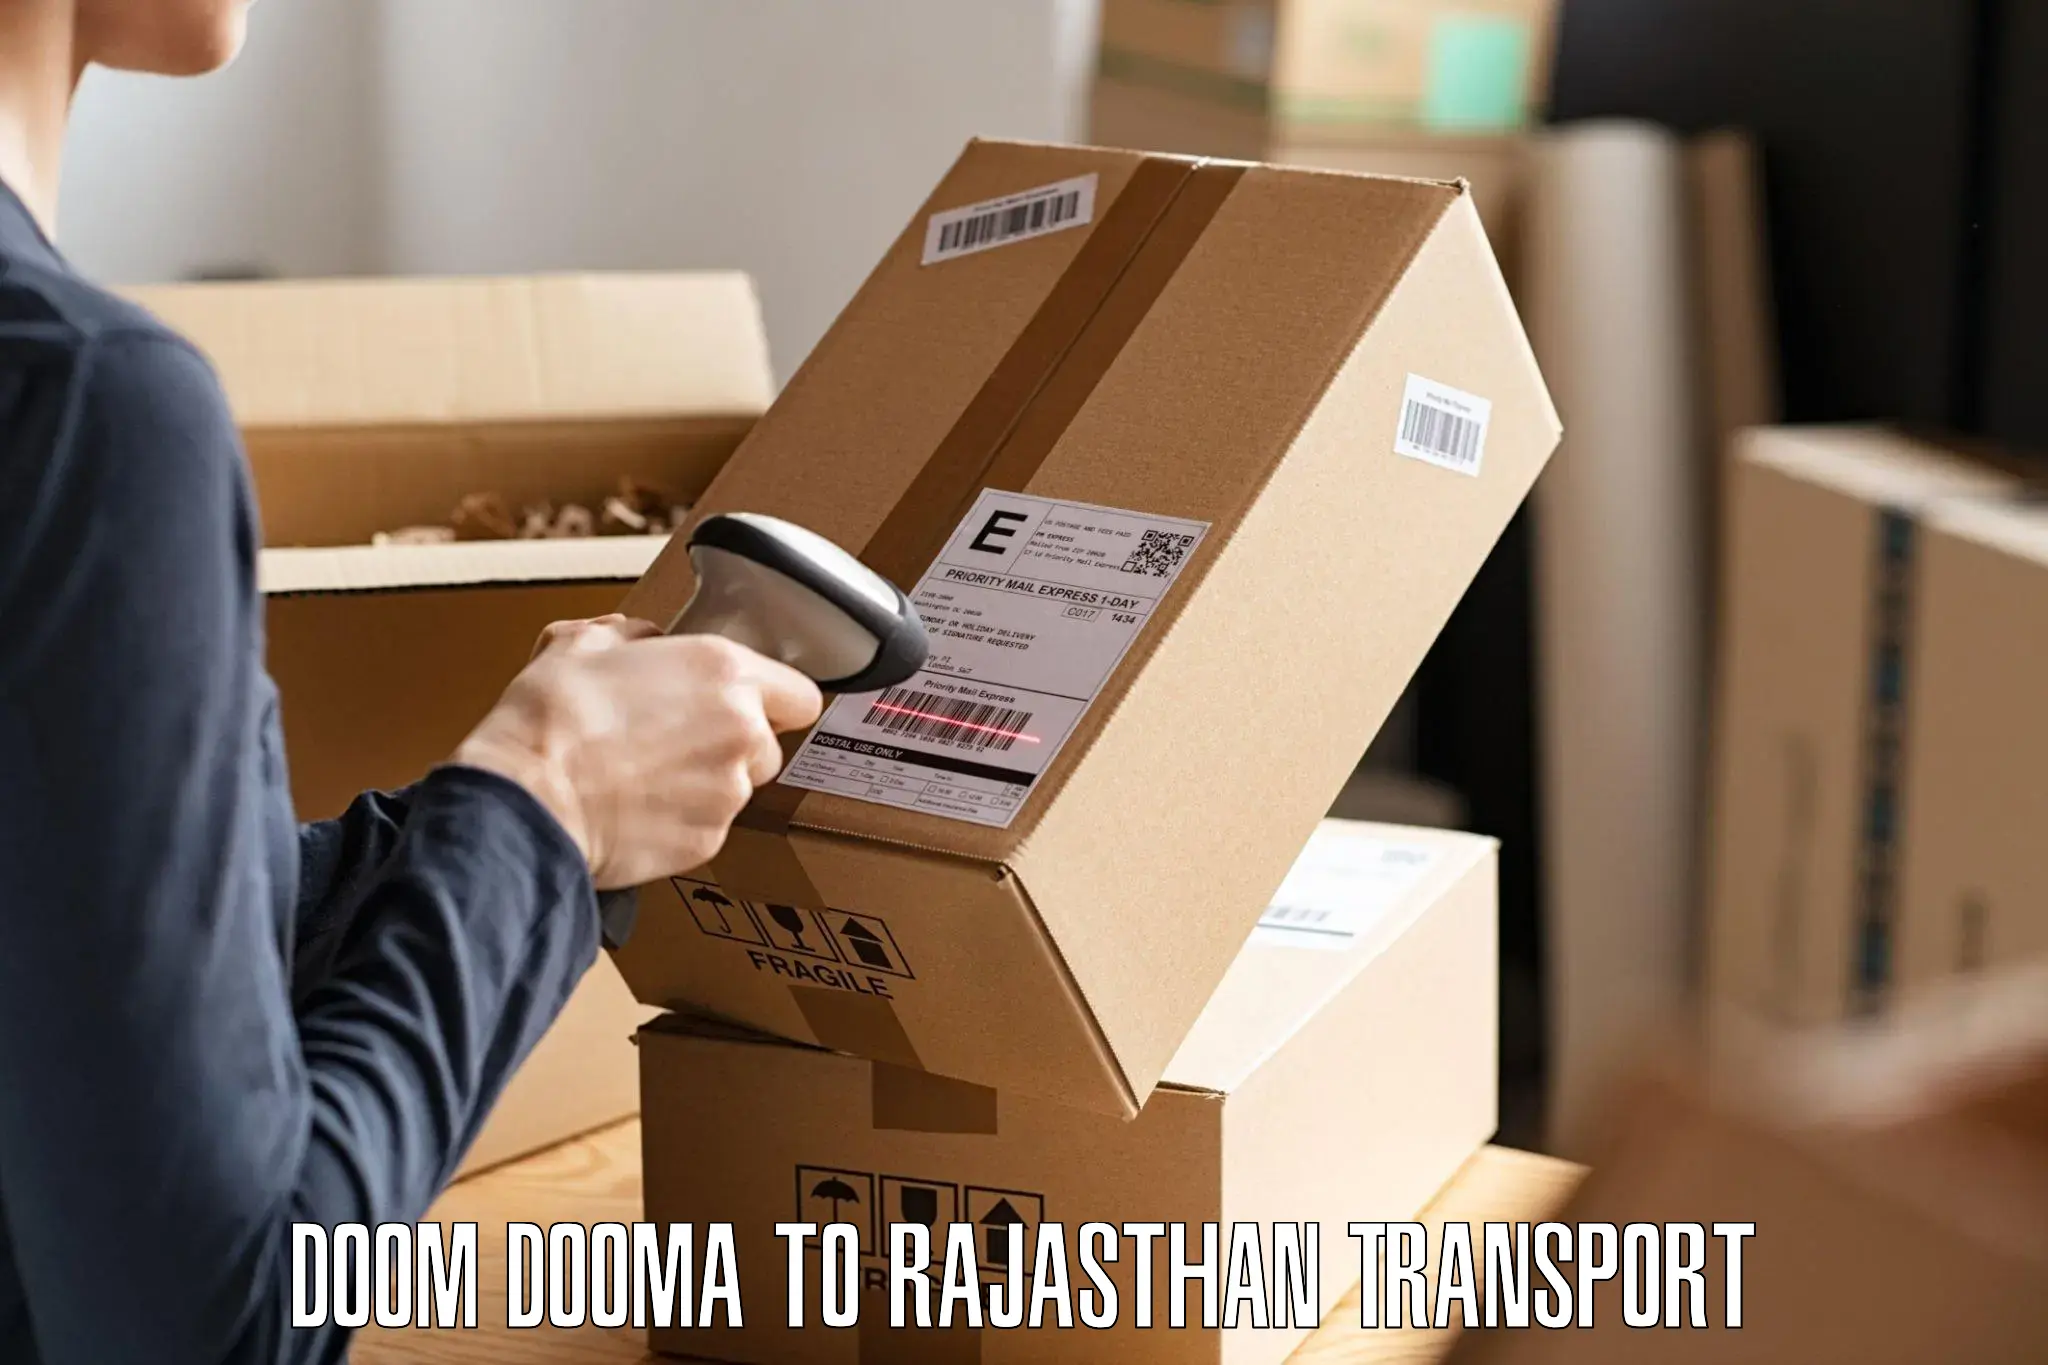 Pick up transport service Doom Dooma to Bijainagar